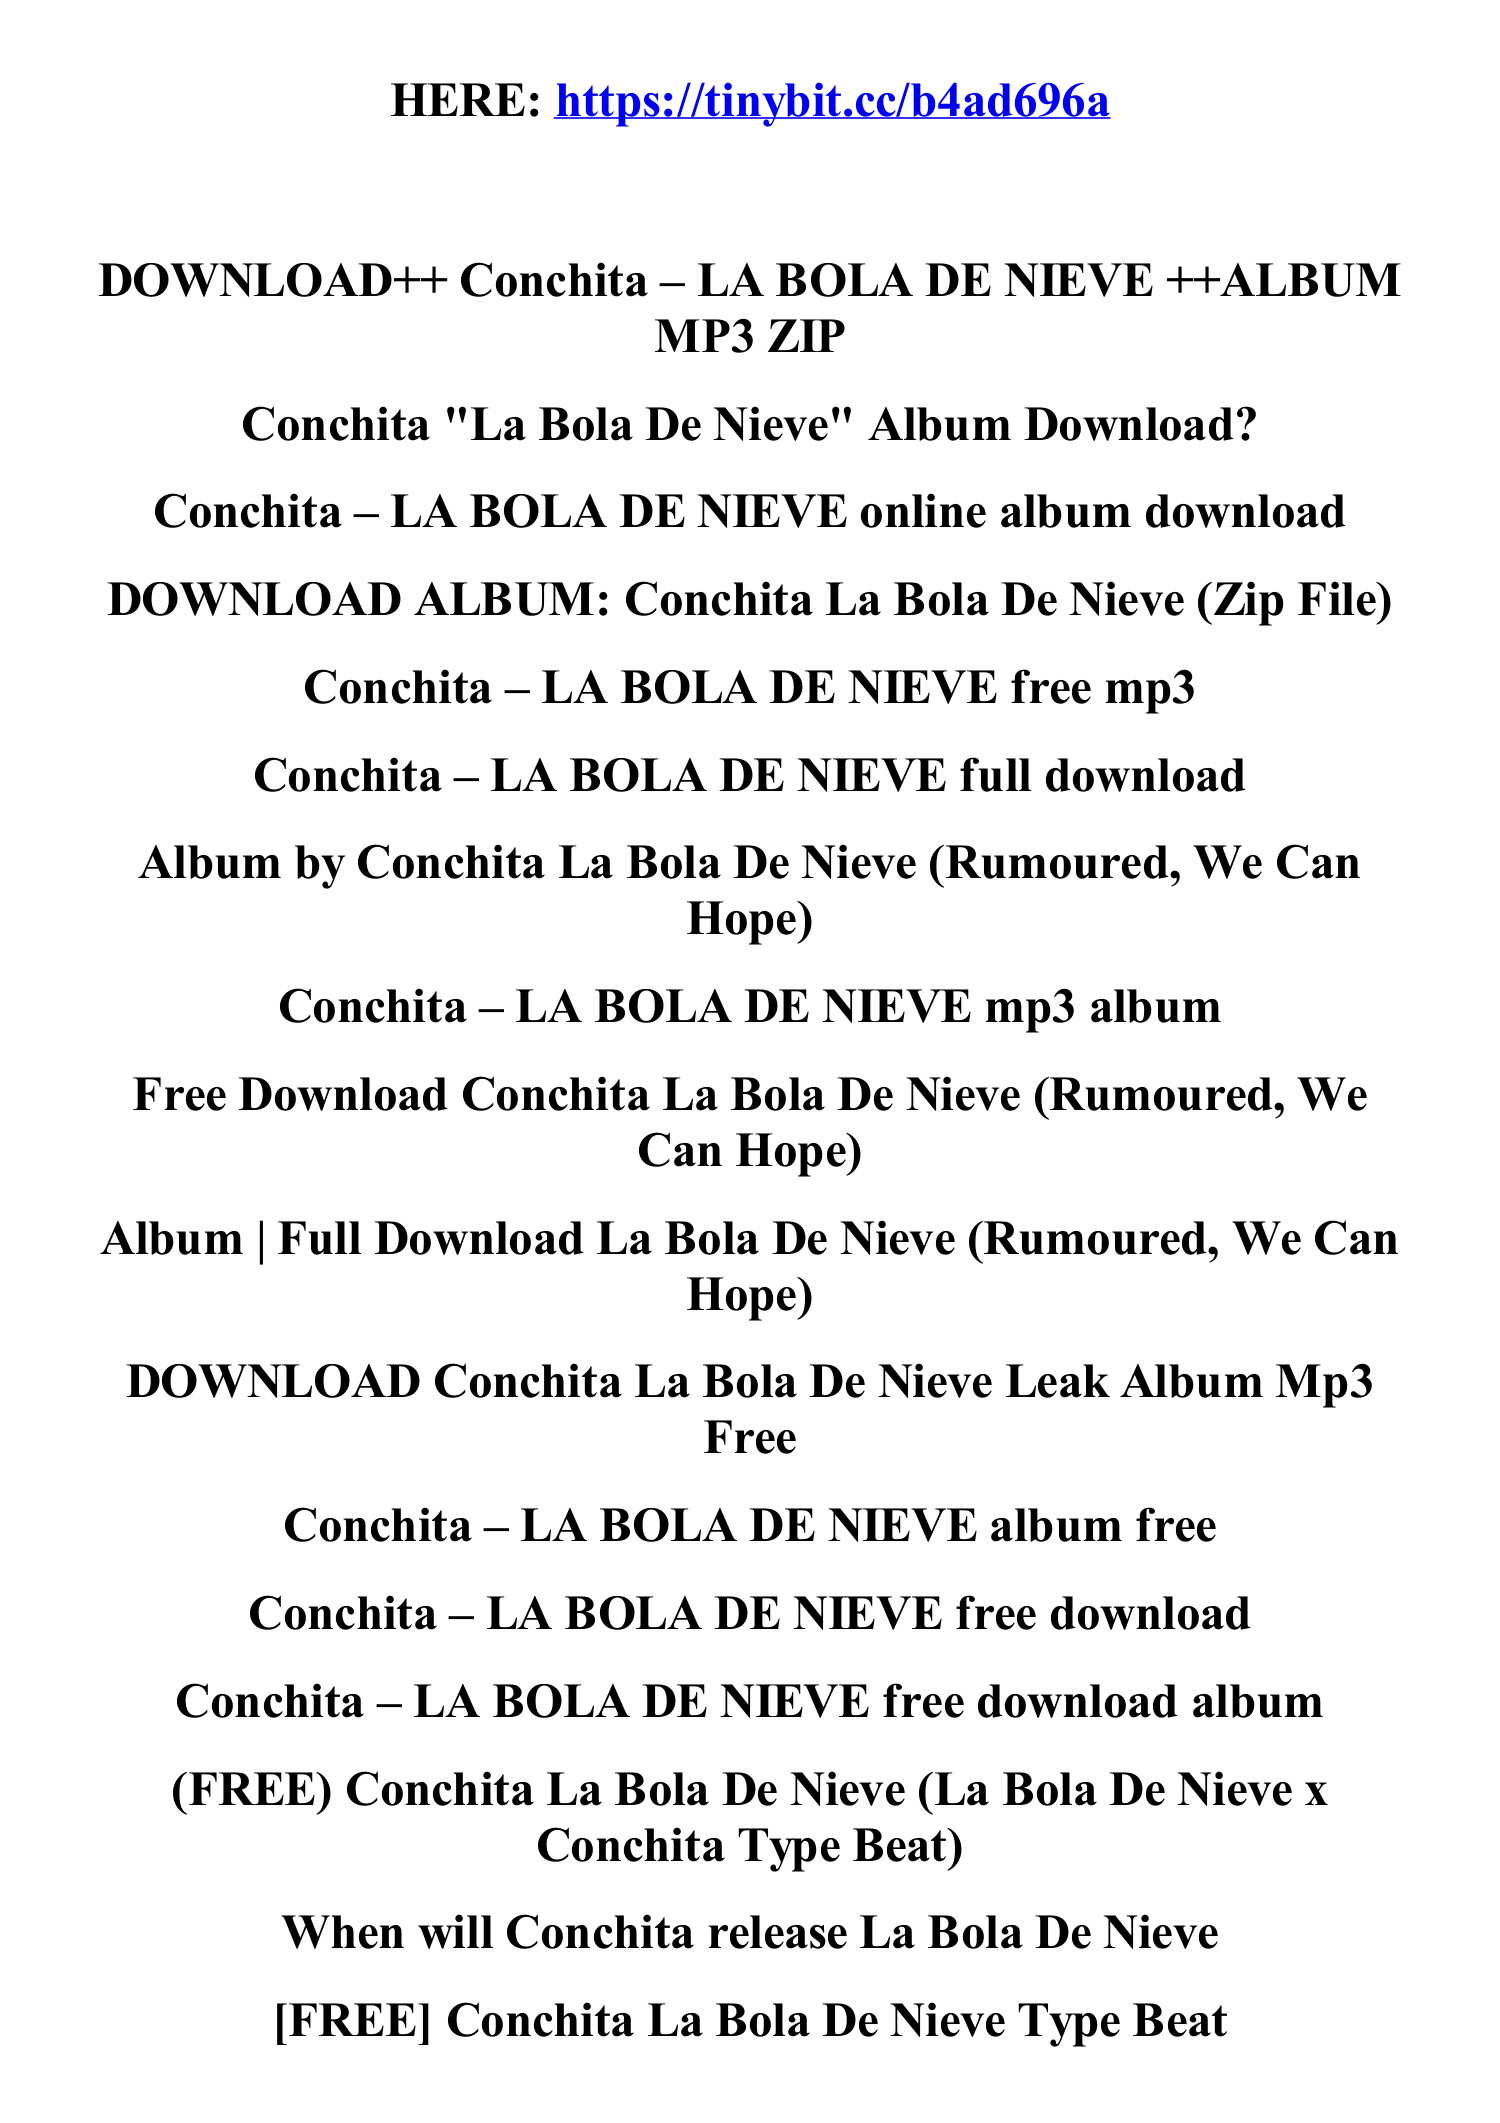 La Bola De Nieve - Album by Conchita